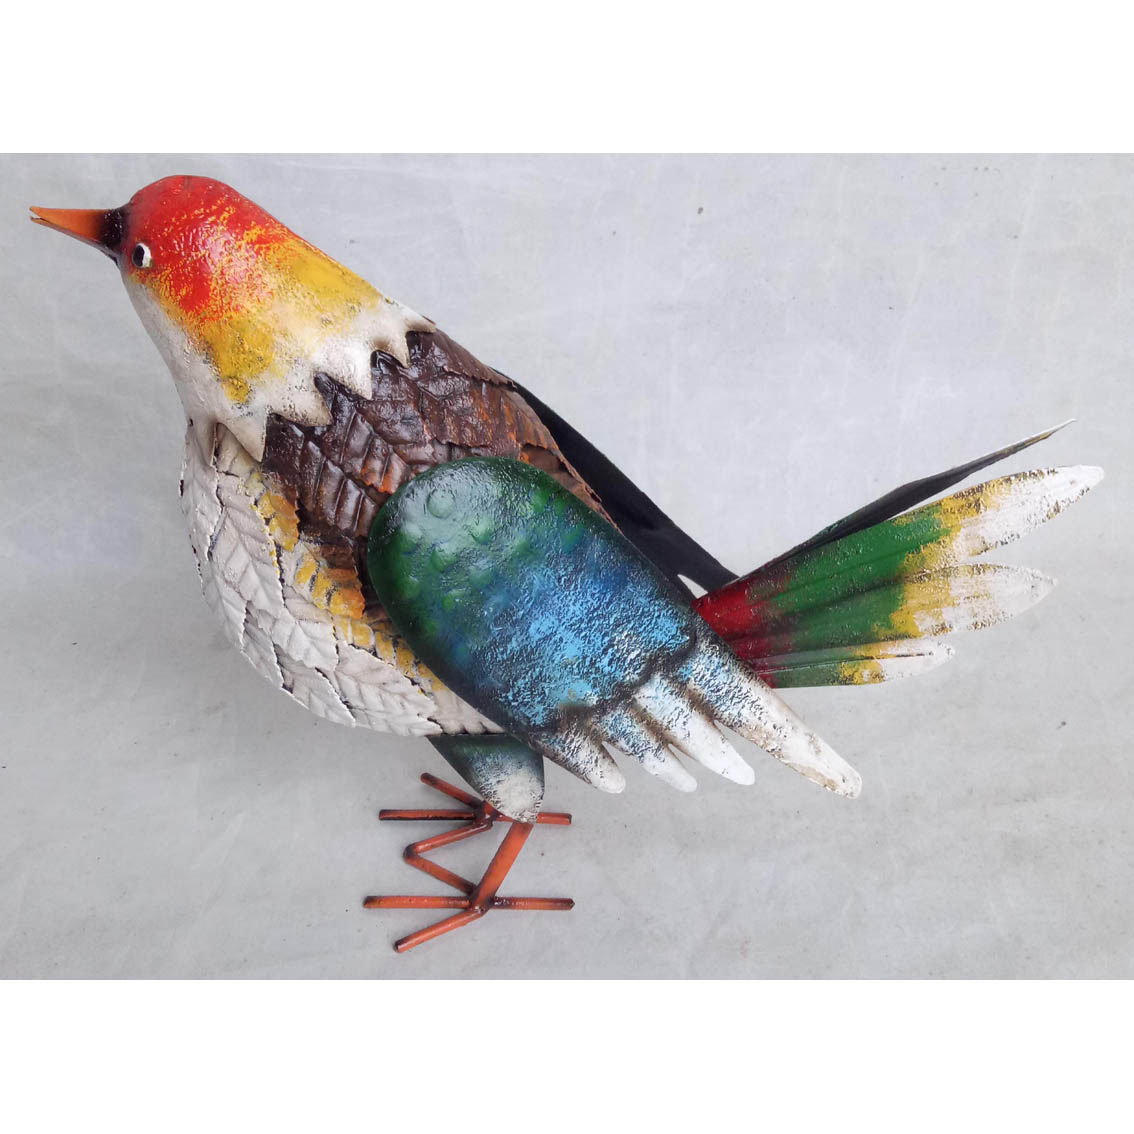 Hand-made metal garden decor bird ornament 